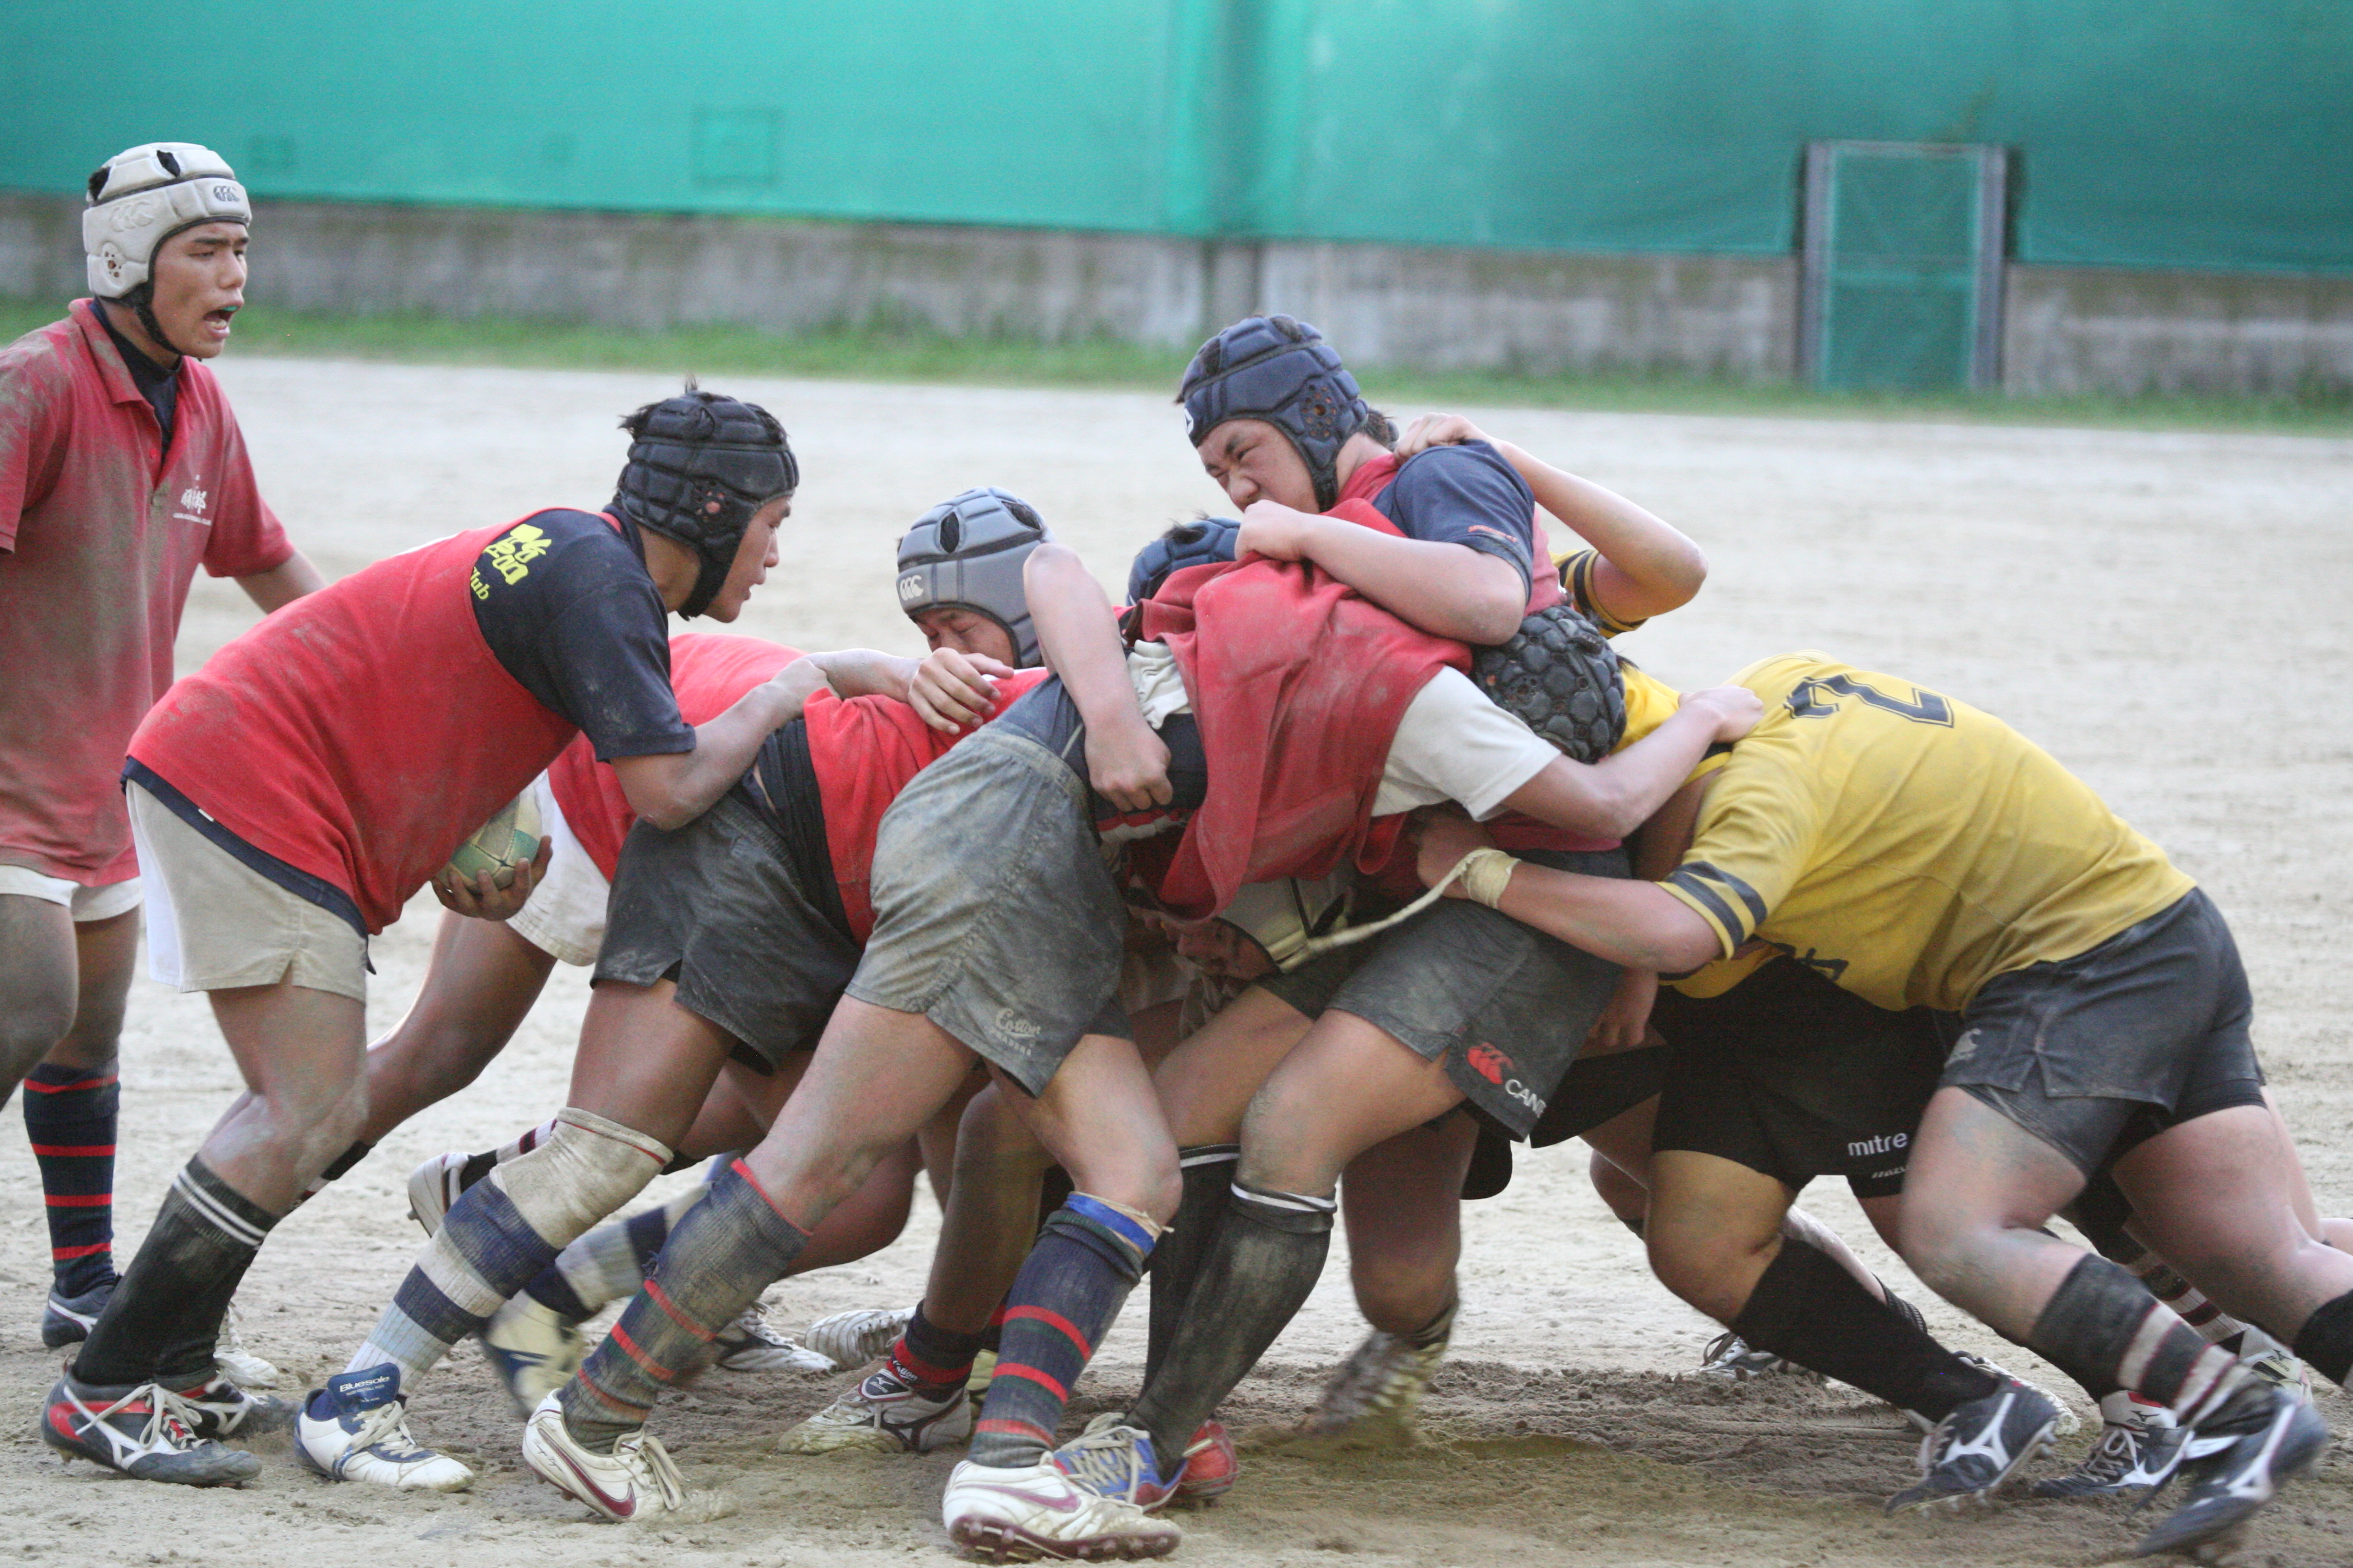 http://kokura-rugby.sakura.ne.jp/2010.7.31%E7%B7%B4%E7%BF%92%E9%A2%A8%E6%99%AF-1.JPG